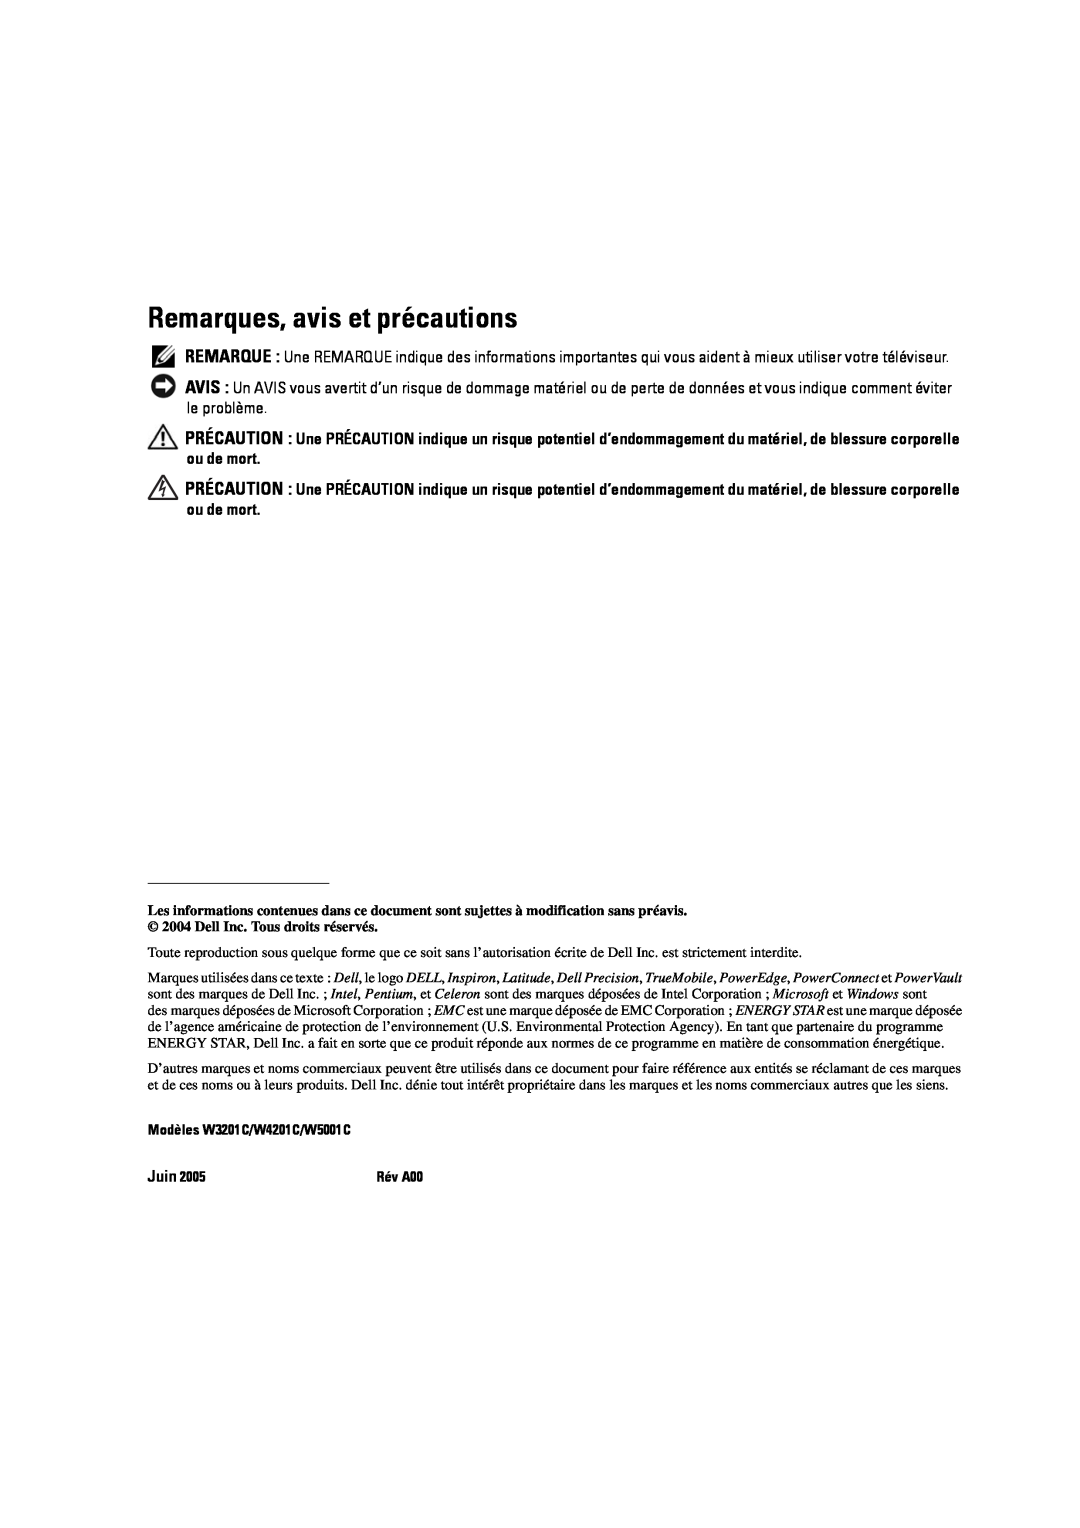 Dell manual Remarques, avis et précautions, Modèles W3201C/W4201C/W5001C 